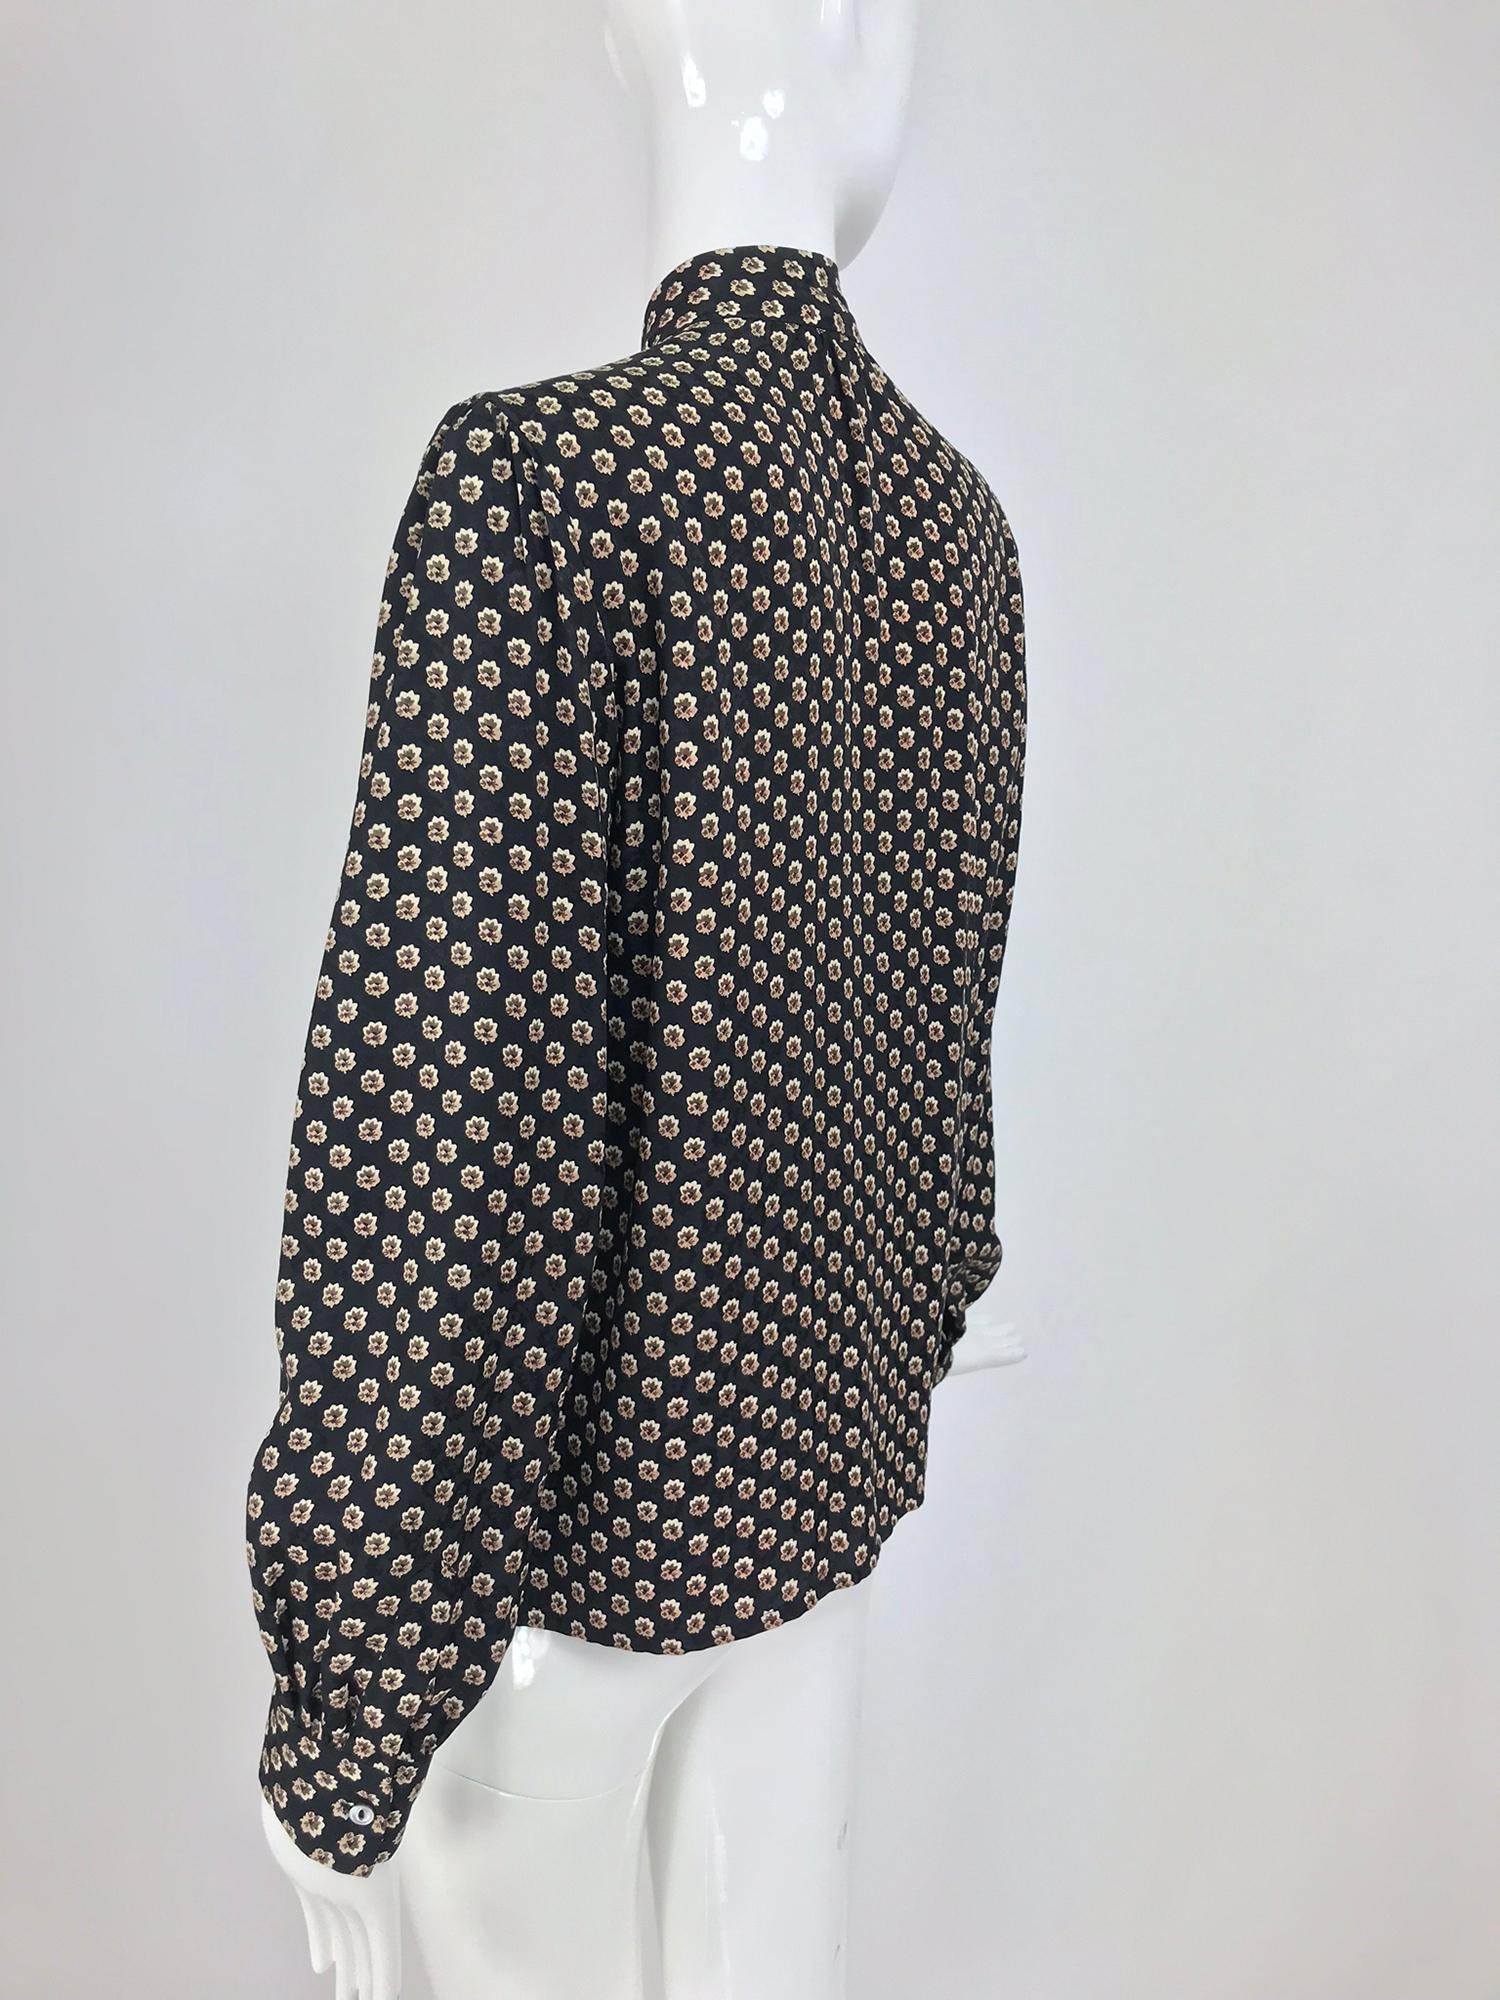 Yves Saint Laurent Provincial Print Silk Bow Neck Blouse 1970s 7